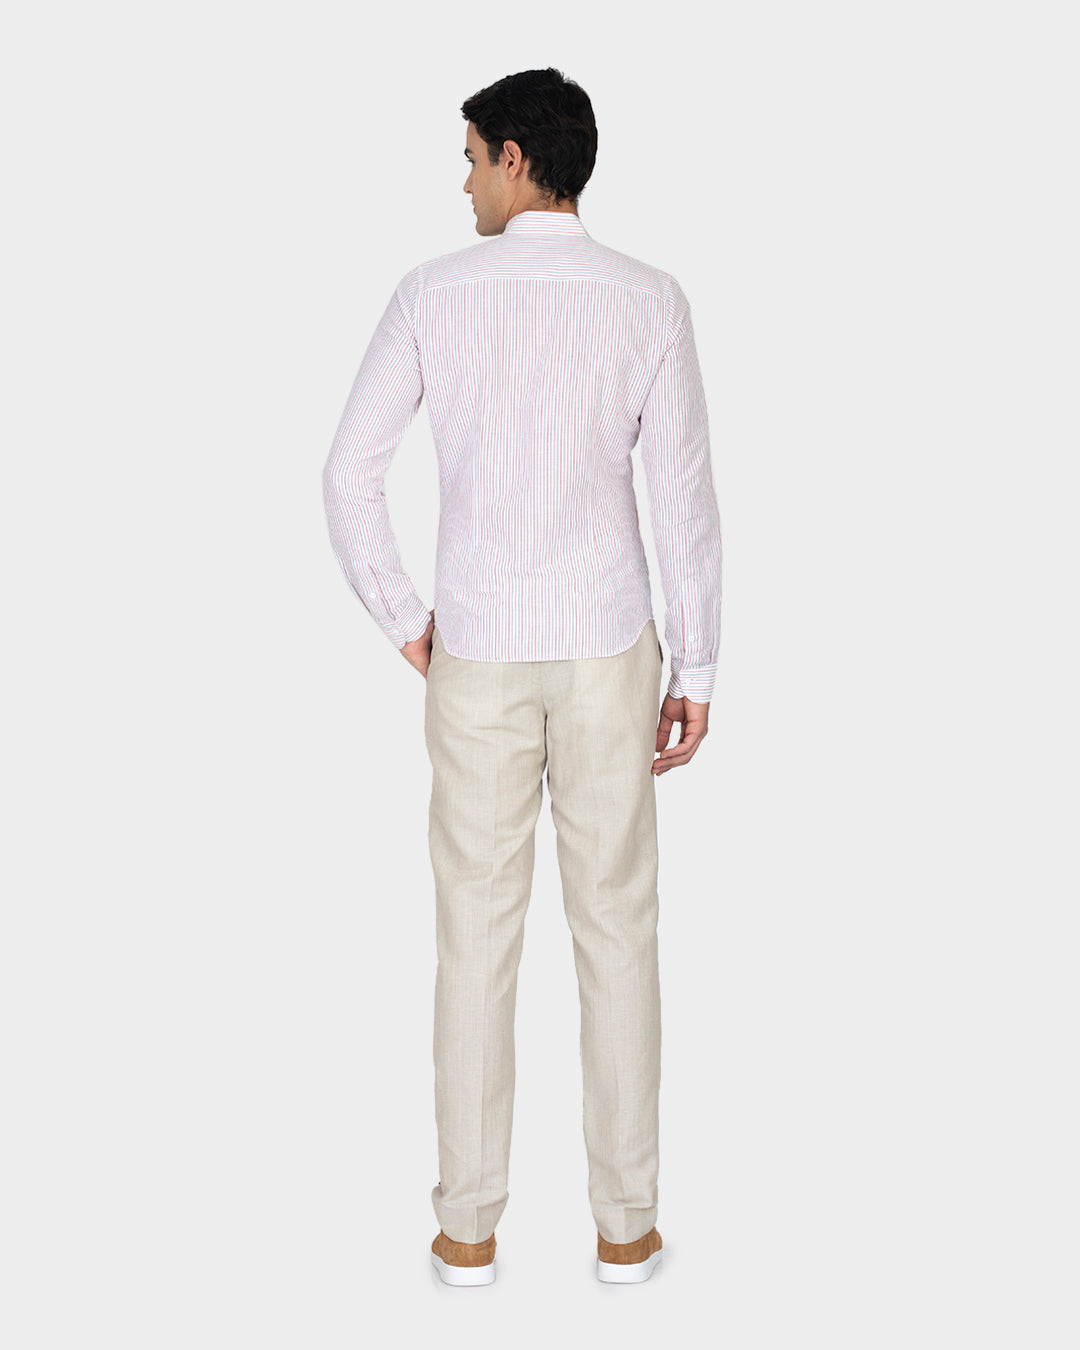 Cotton Linen: Red Blue Alternate stripes On White Shirt